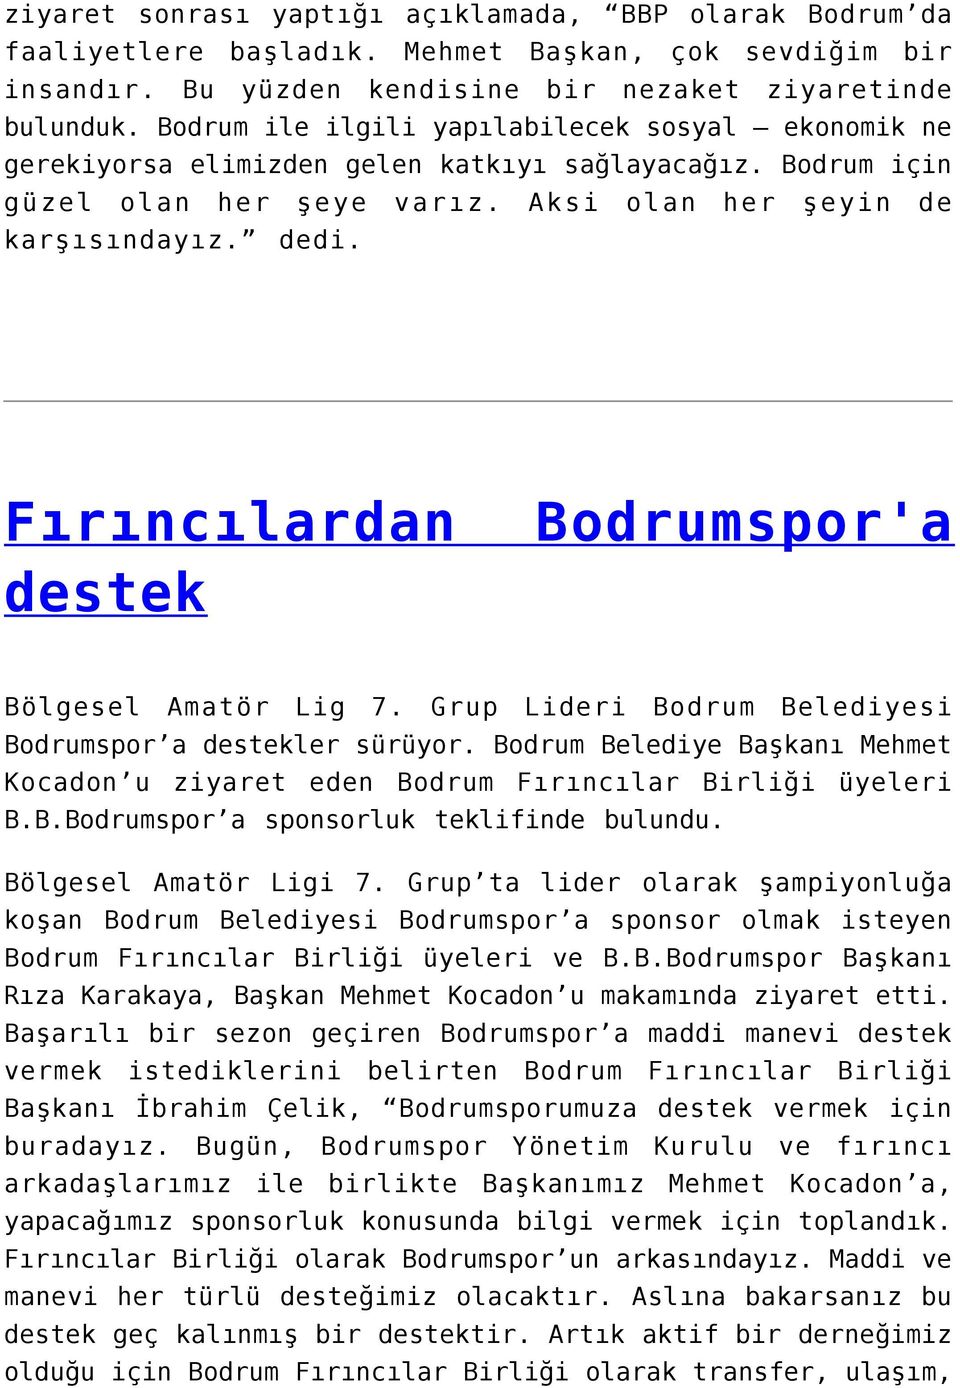 Fırıncılardan destek Bodrumspor'a Bölgesel Amatör Lig 7. Grup Lideri Bodrum Belediyesi Bodrumspor a destekler sürüyor.